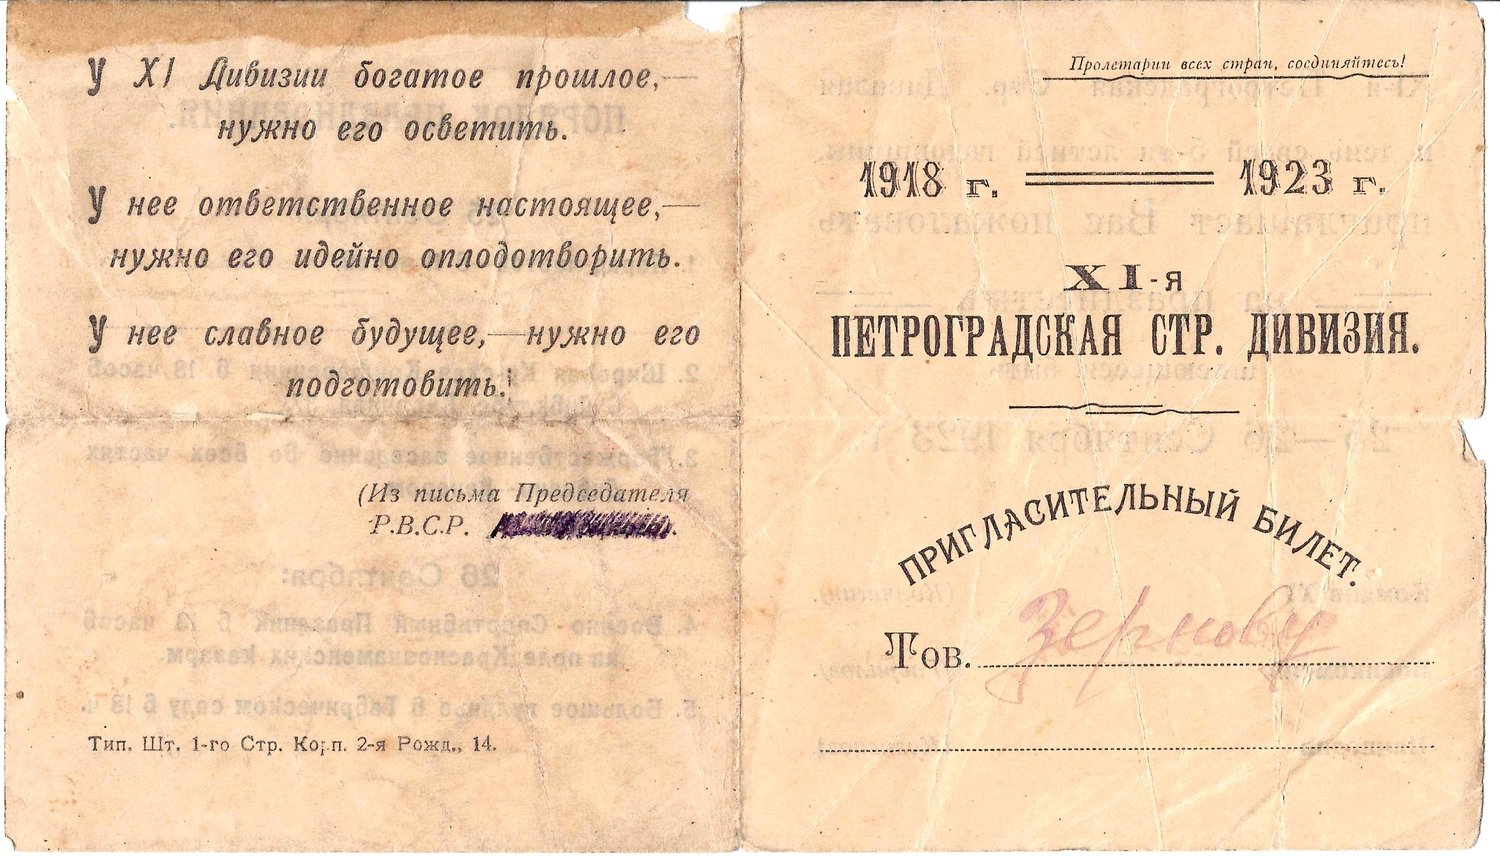 Пригласительный билет на празднование пятилетия 11-й Петроградской стрелковой дивизии 25 сентября - 26 сентября 1923 года на имя М.А. Зернова.